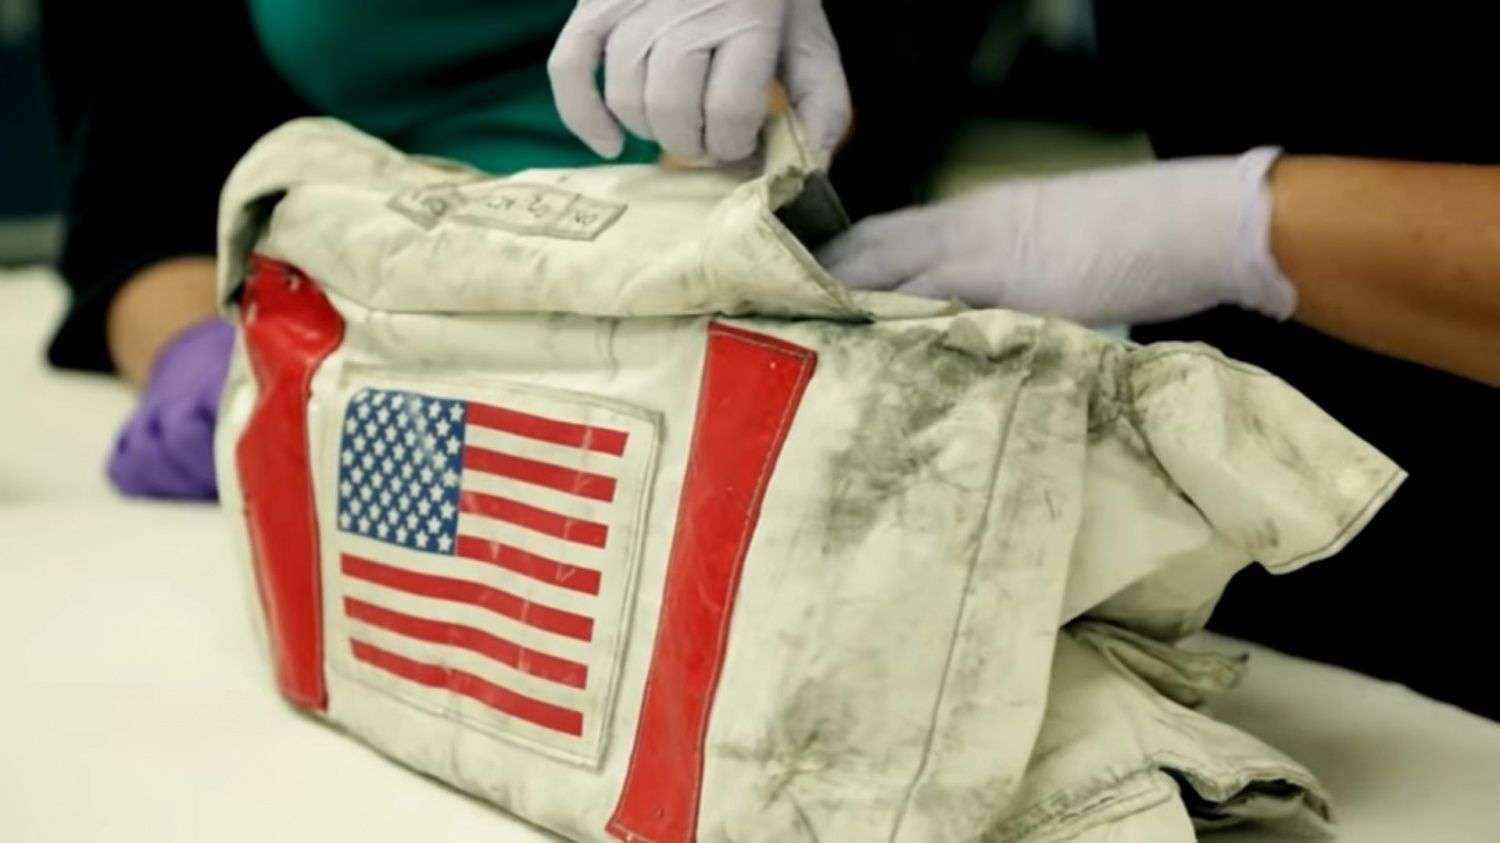 स्पेस साइंस: वैज्ञानिकों ने बनाया 'डस्टबस्टर' जो अंतरिक्ष यात्रियों को बचाएगा चांद की धूल-मिट्टी से